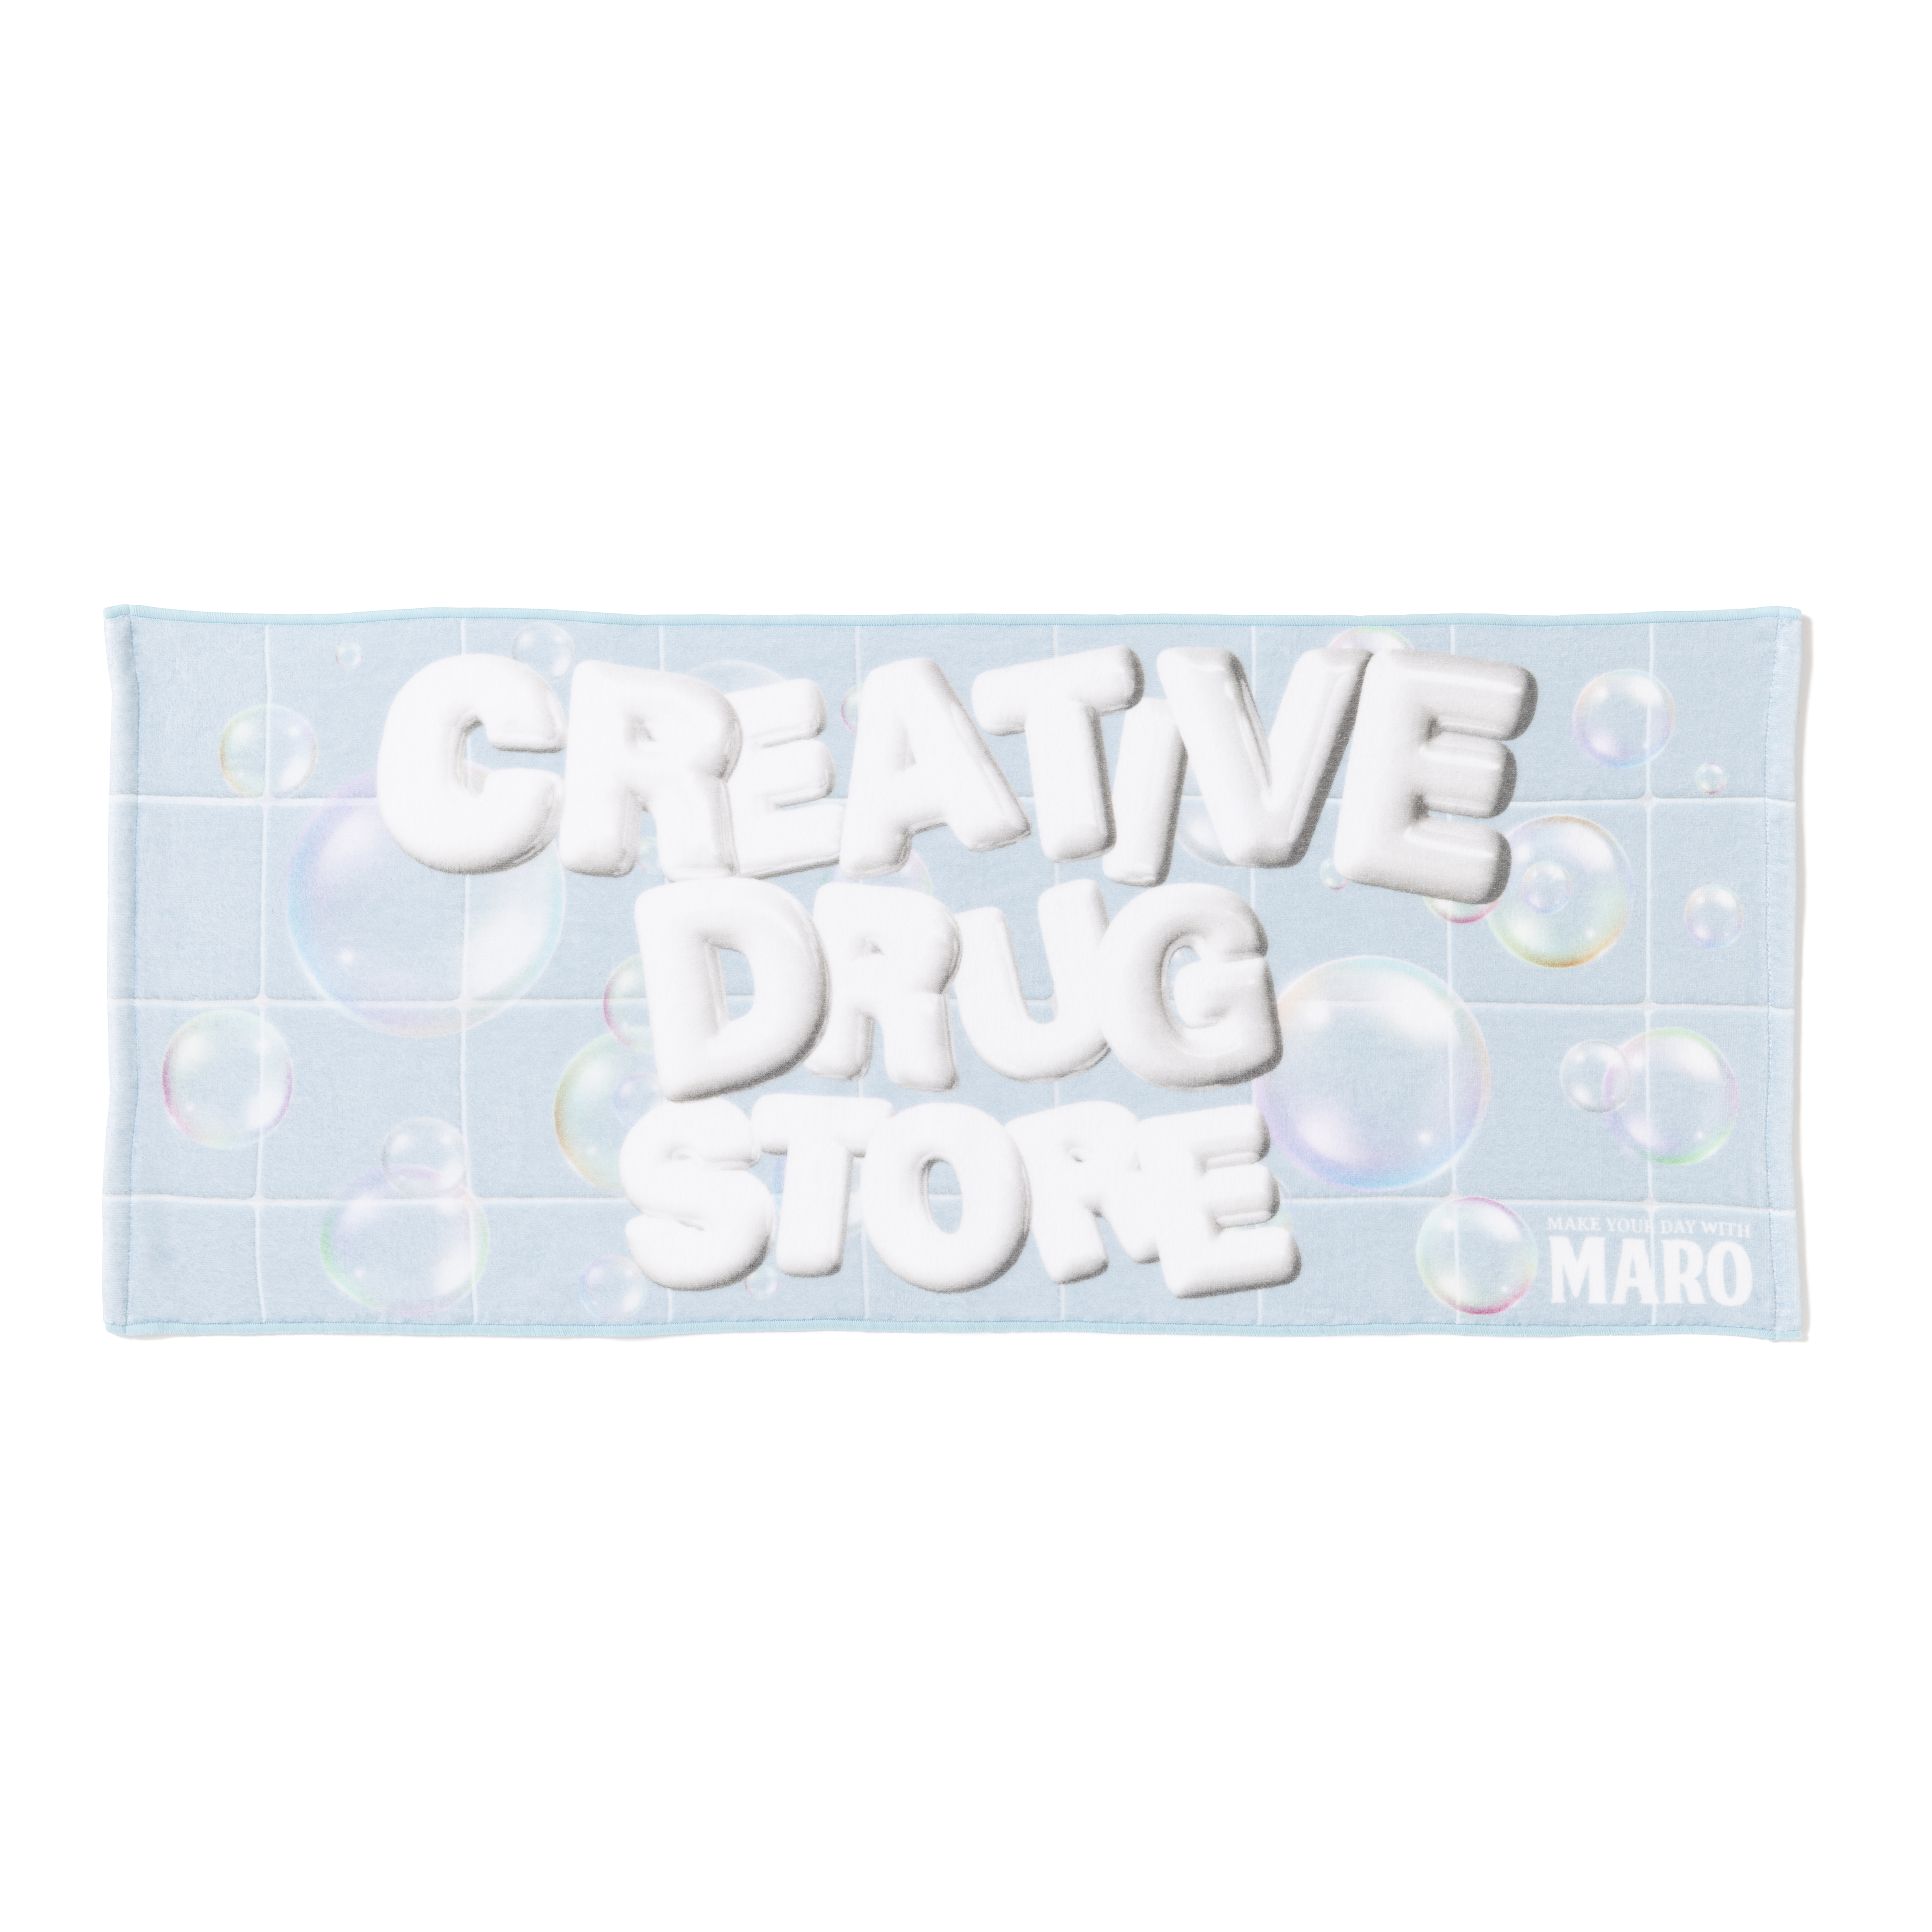 【値引不可】CREATIVE DRUG STORE MARO ステッカー